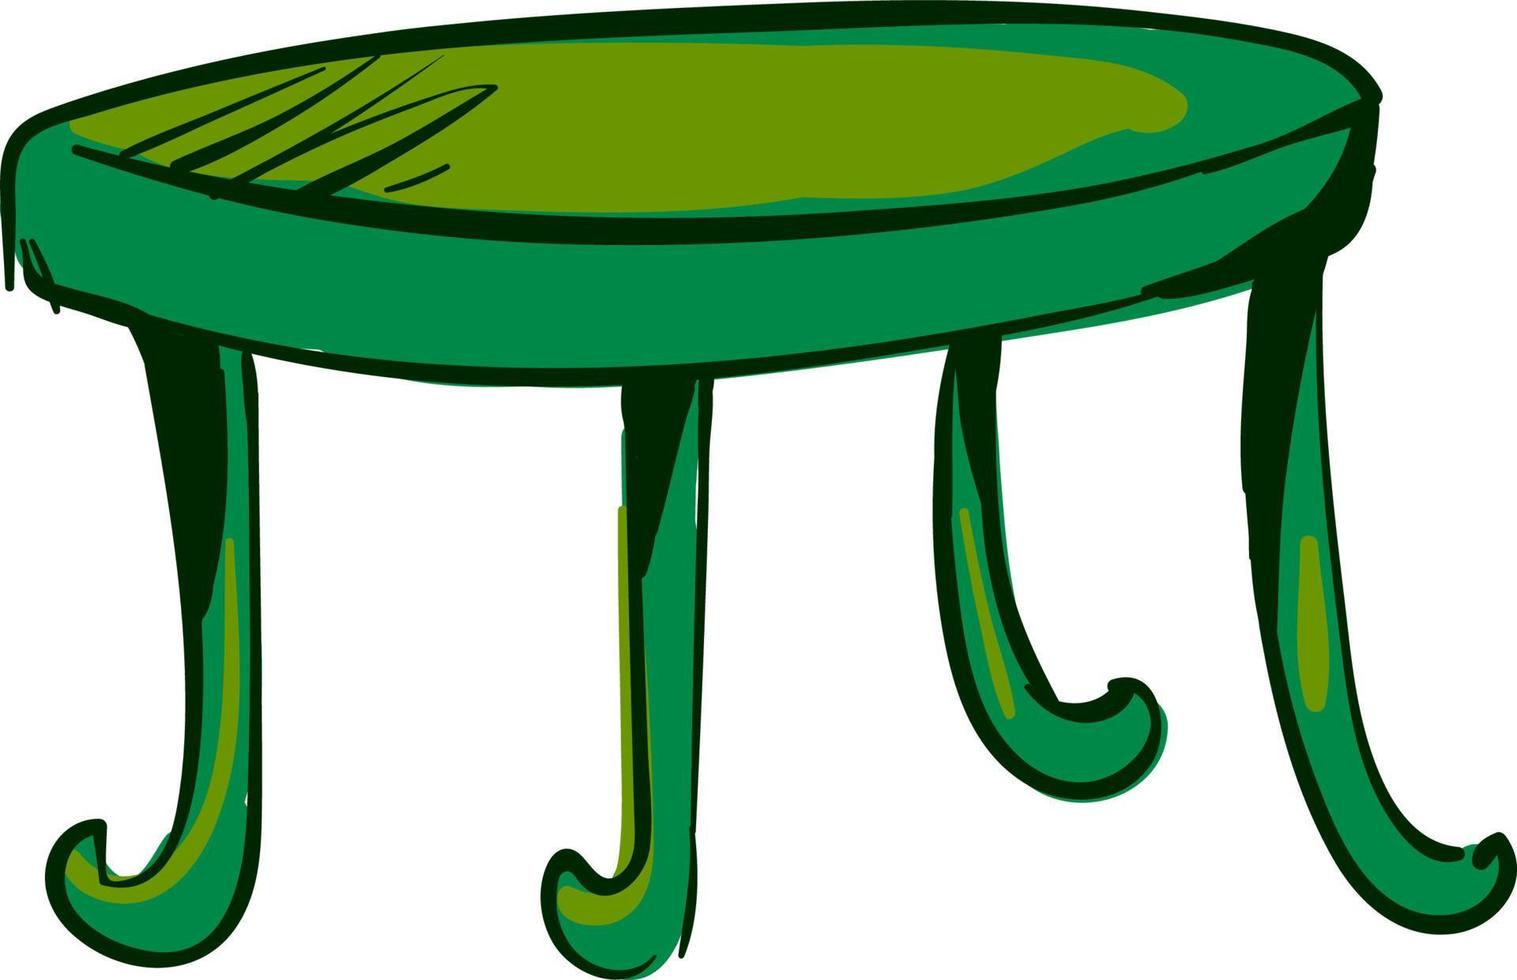 Grüner Tisch, Illustration, Vektor auf weißem Hintergrund.